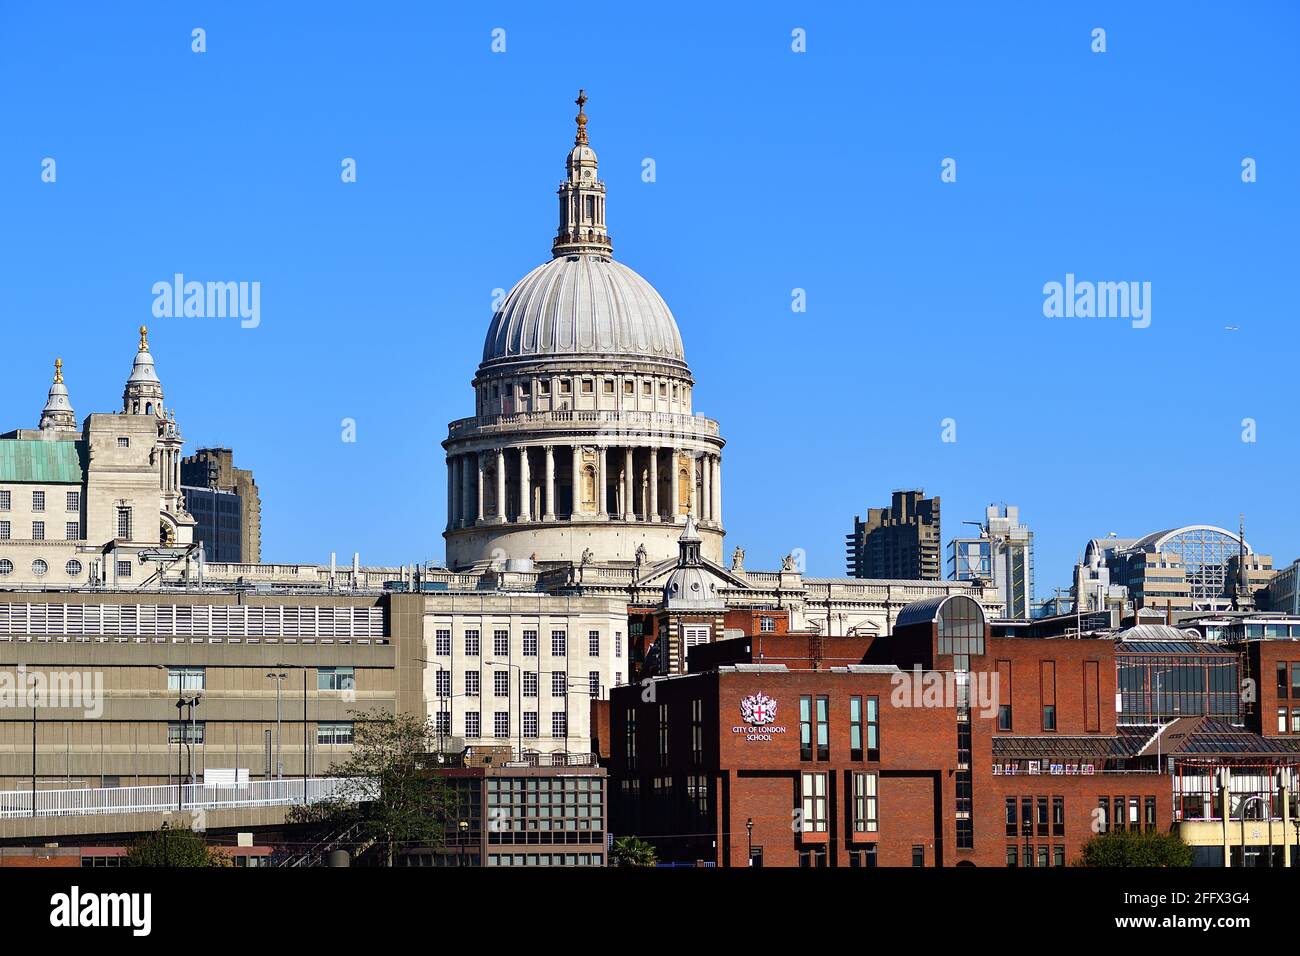 Londra, Inghilterra, Regno Unito. Cattedrale di San Paolo, capolavoro di Sir Christopher Wren in cima a Ludgate Hill. Foto Stock